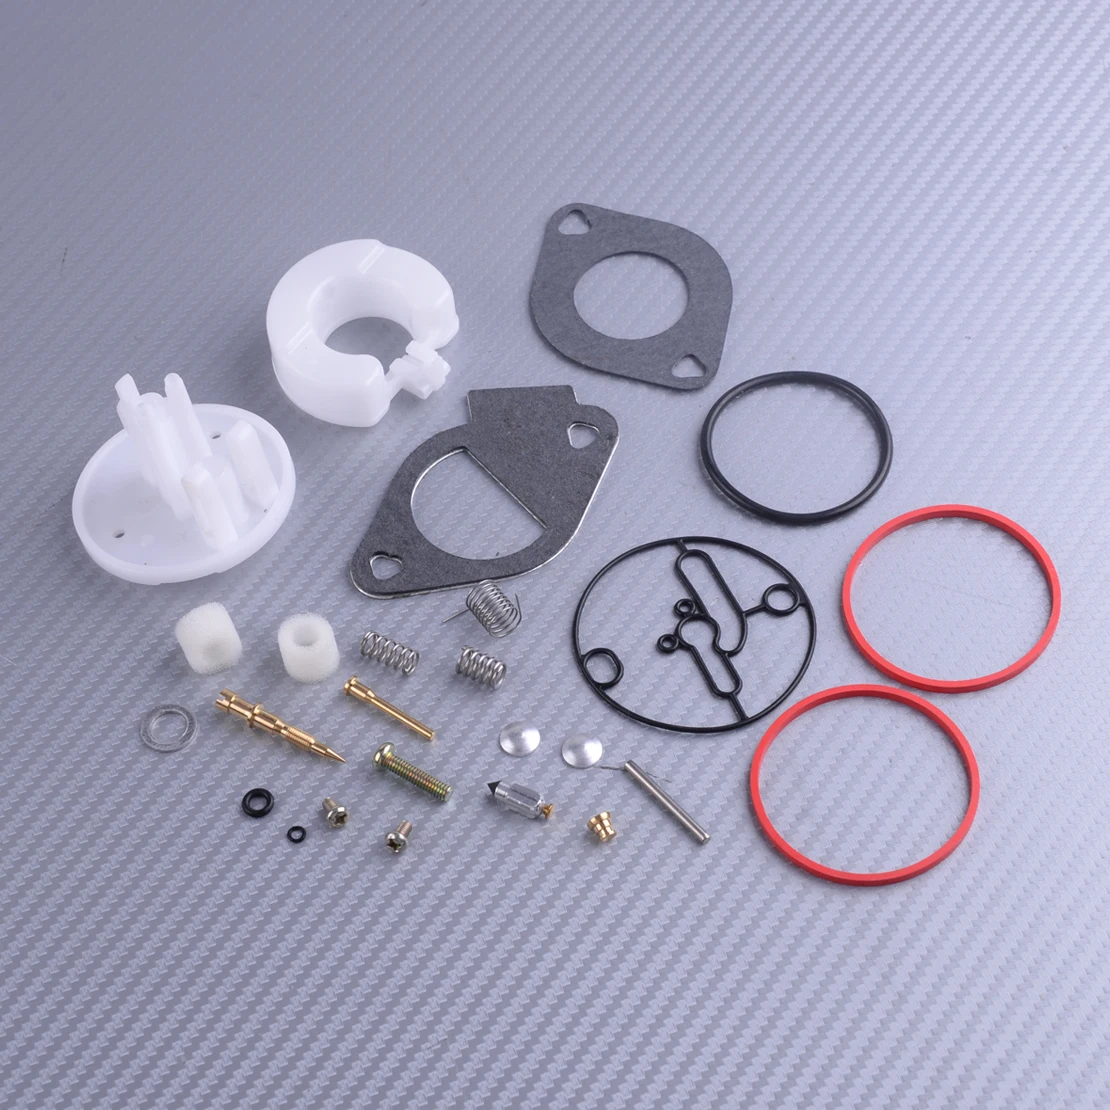 LETAOSK Carburetor Repair Kit Fit for Briggs Stratton 14 18 31E707 31P777 - $83.26